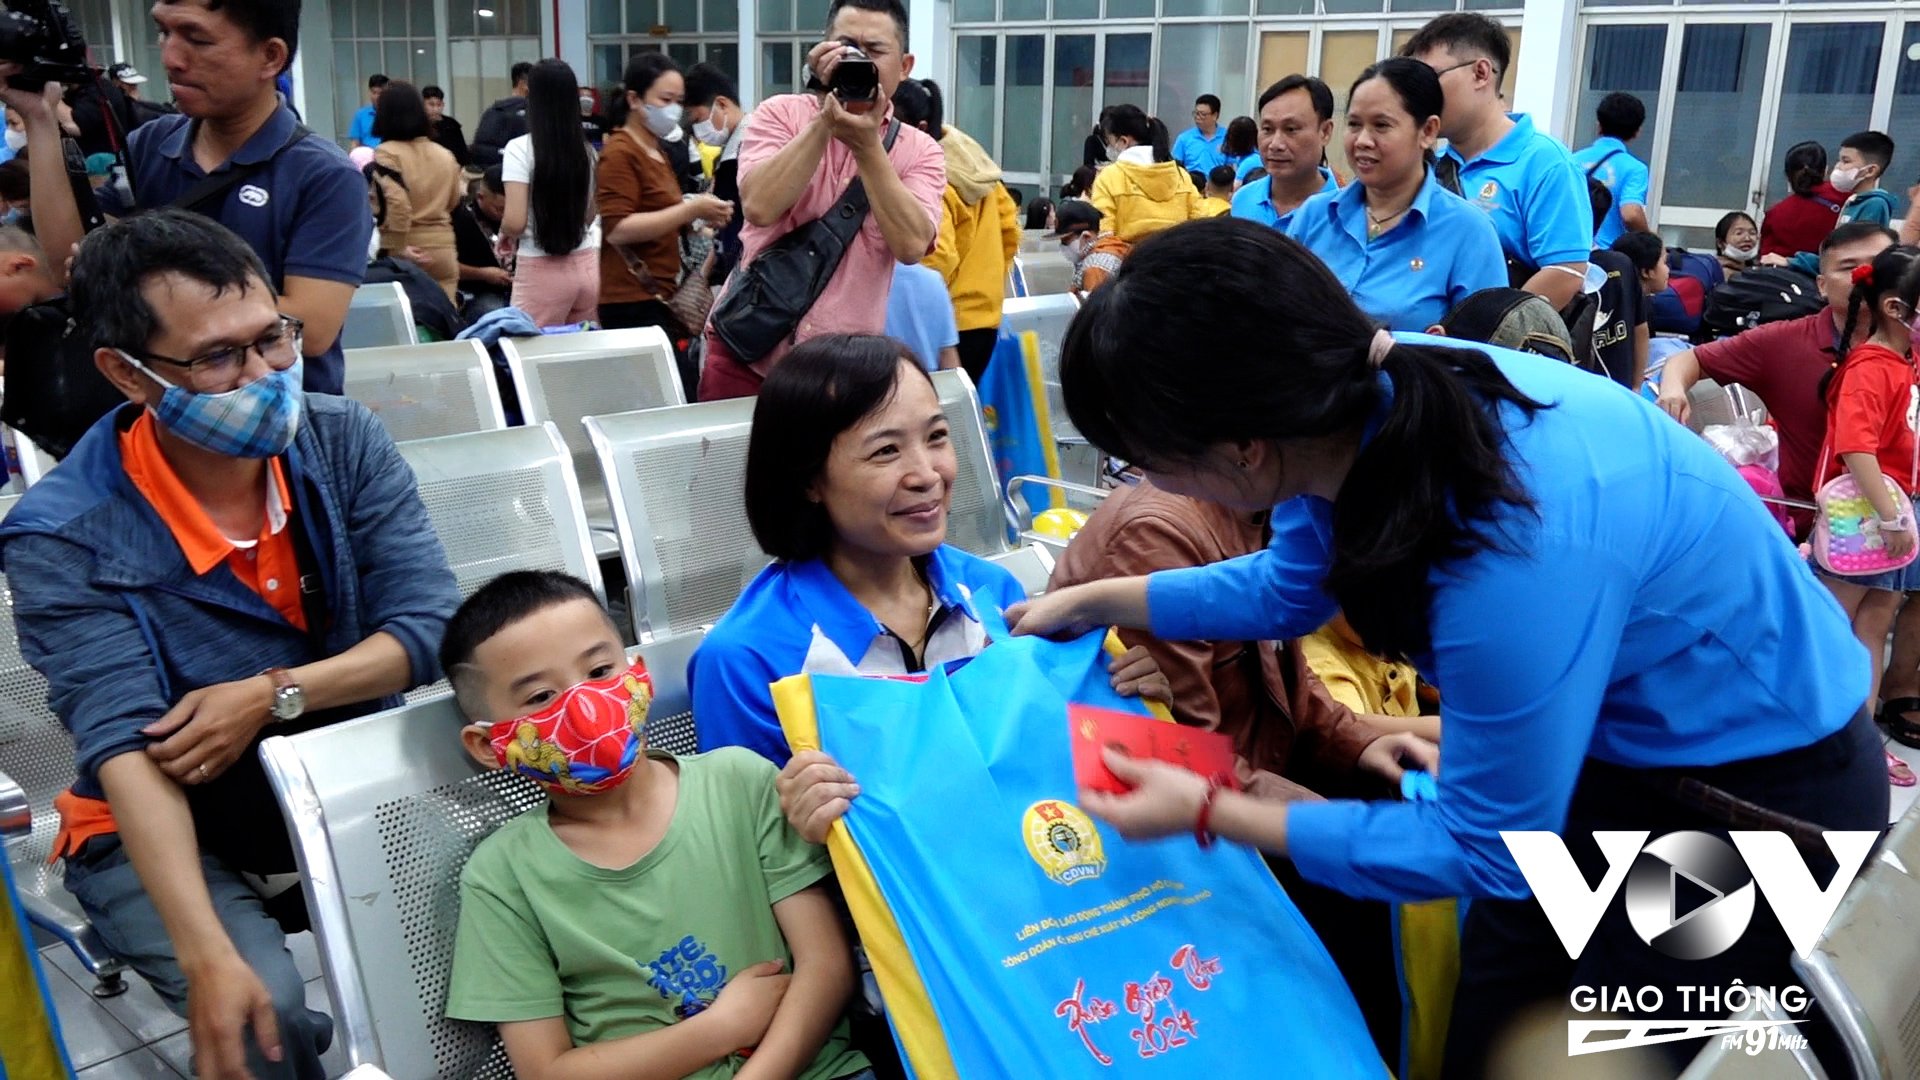 Bà Trần Thị Diệu Thuý - Chủ tịch Liên đoàn Lao động TP.HCM trao quà và lì xì các em nhỏ